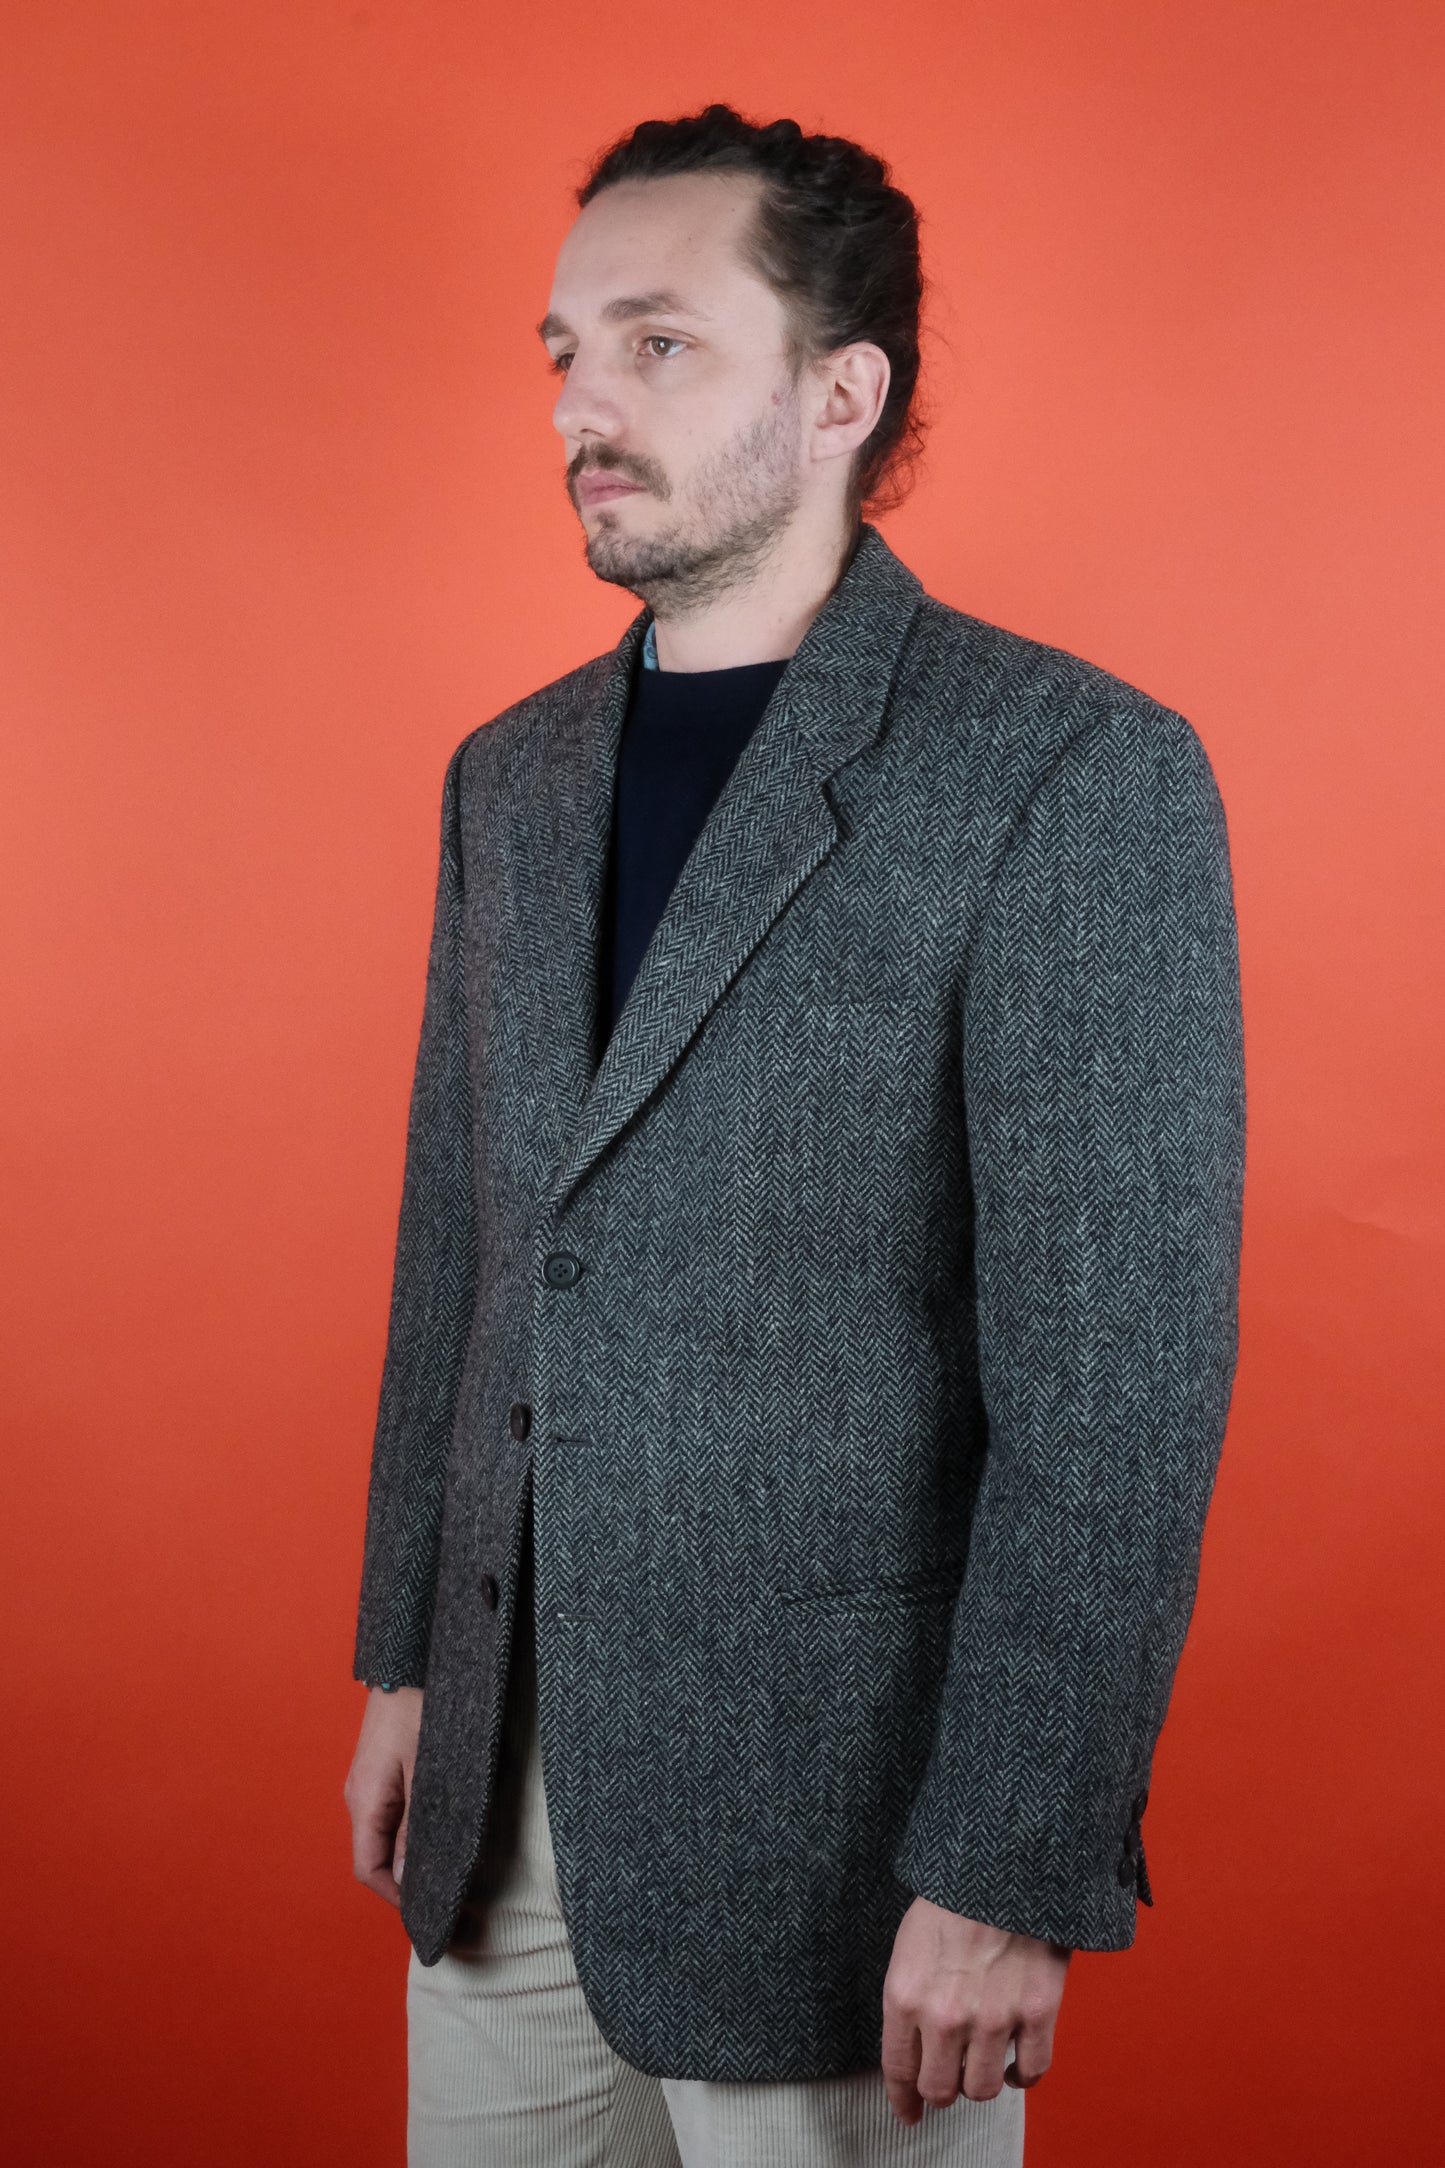 Harris Tweed Wool Grey Suit Jacket 'L' - vintage clothing clochard92.com